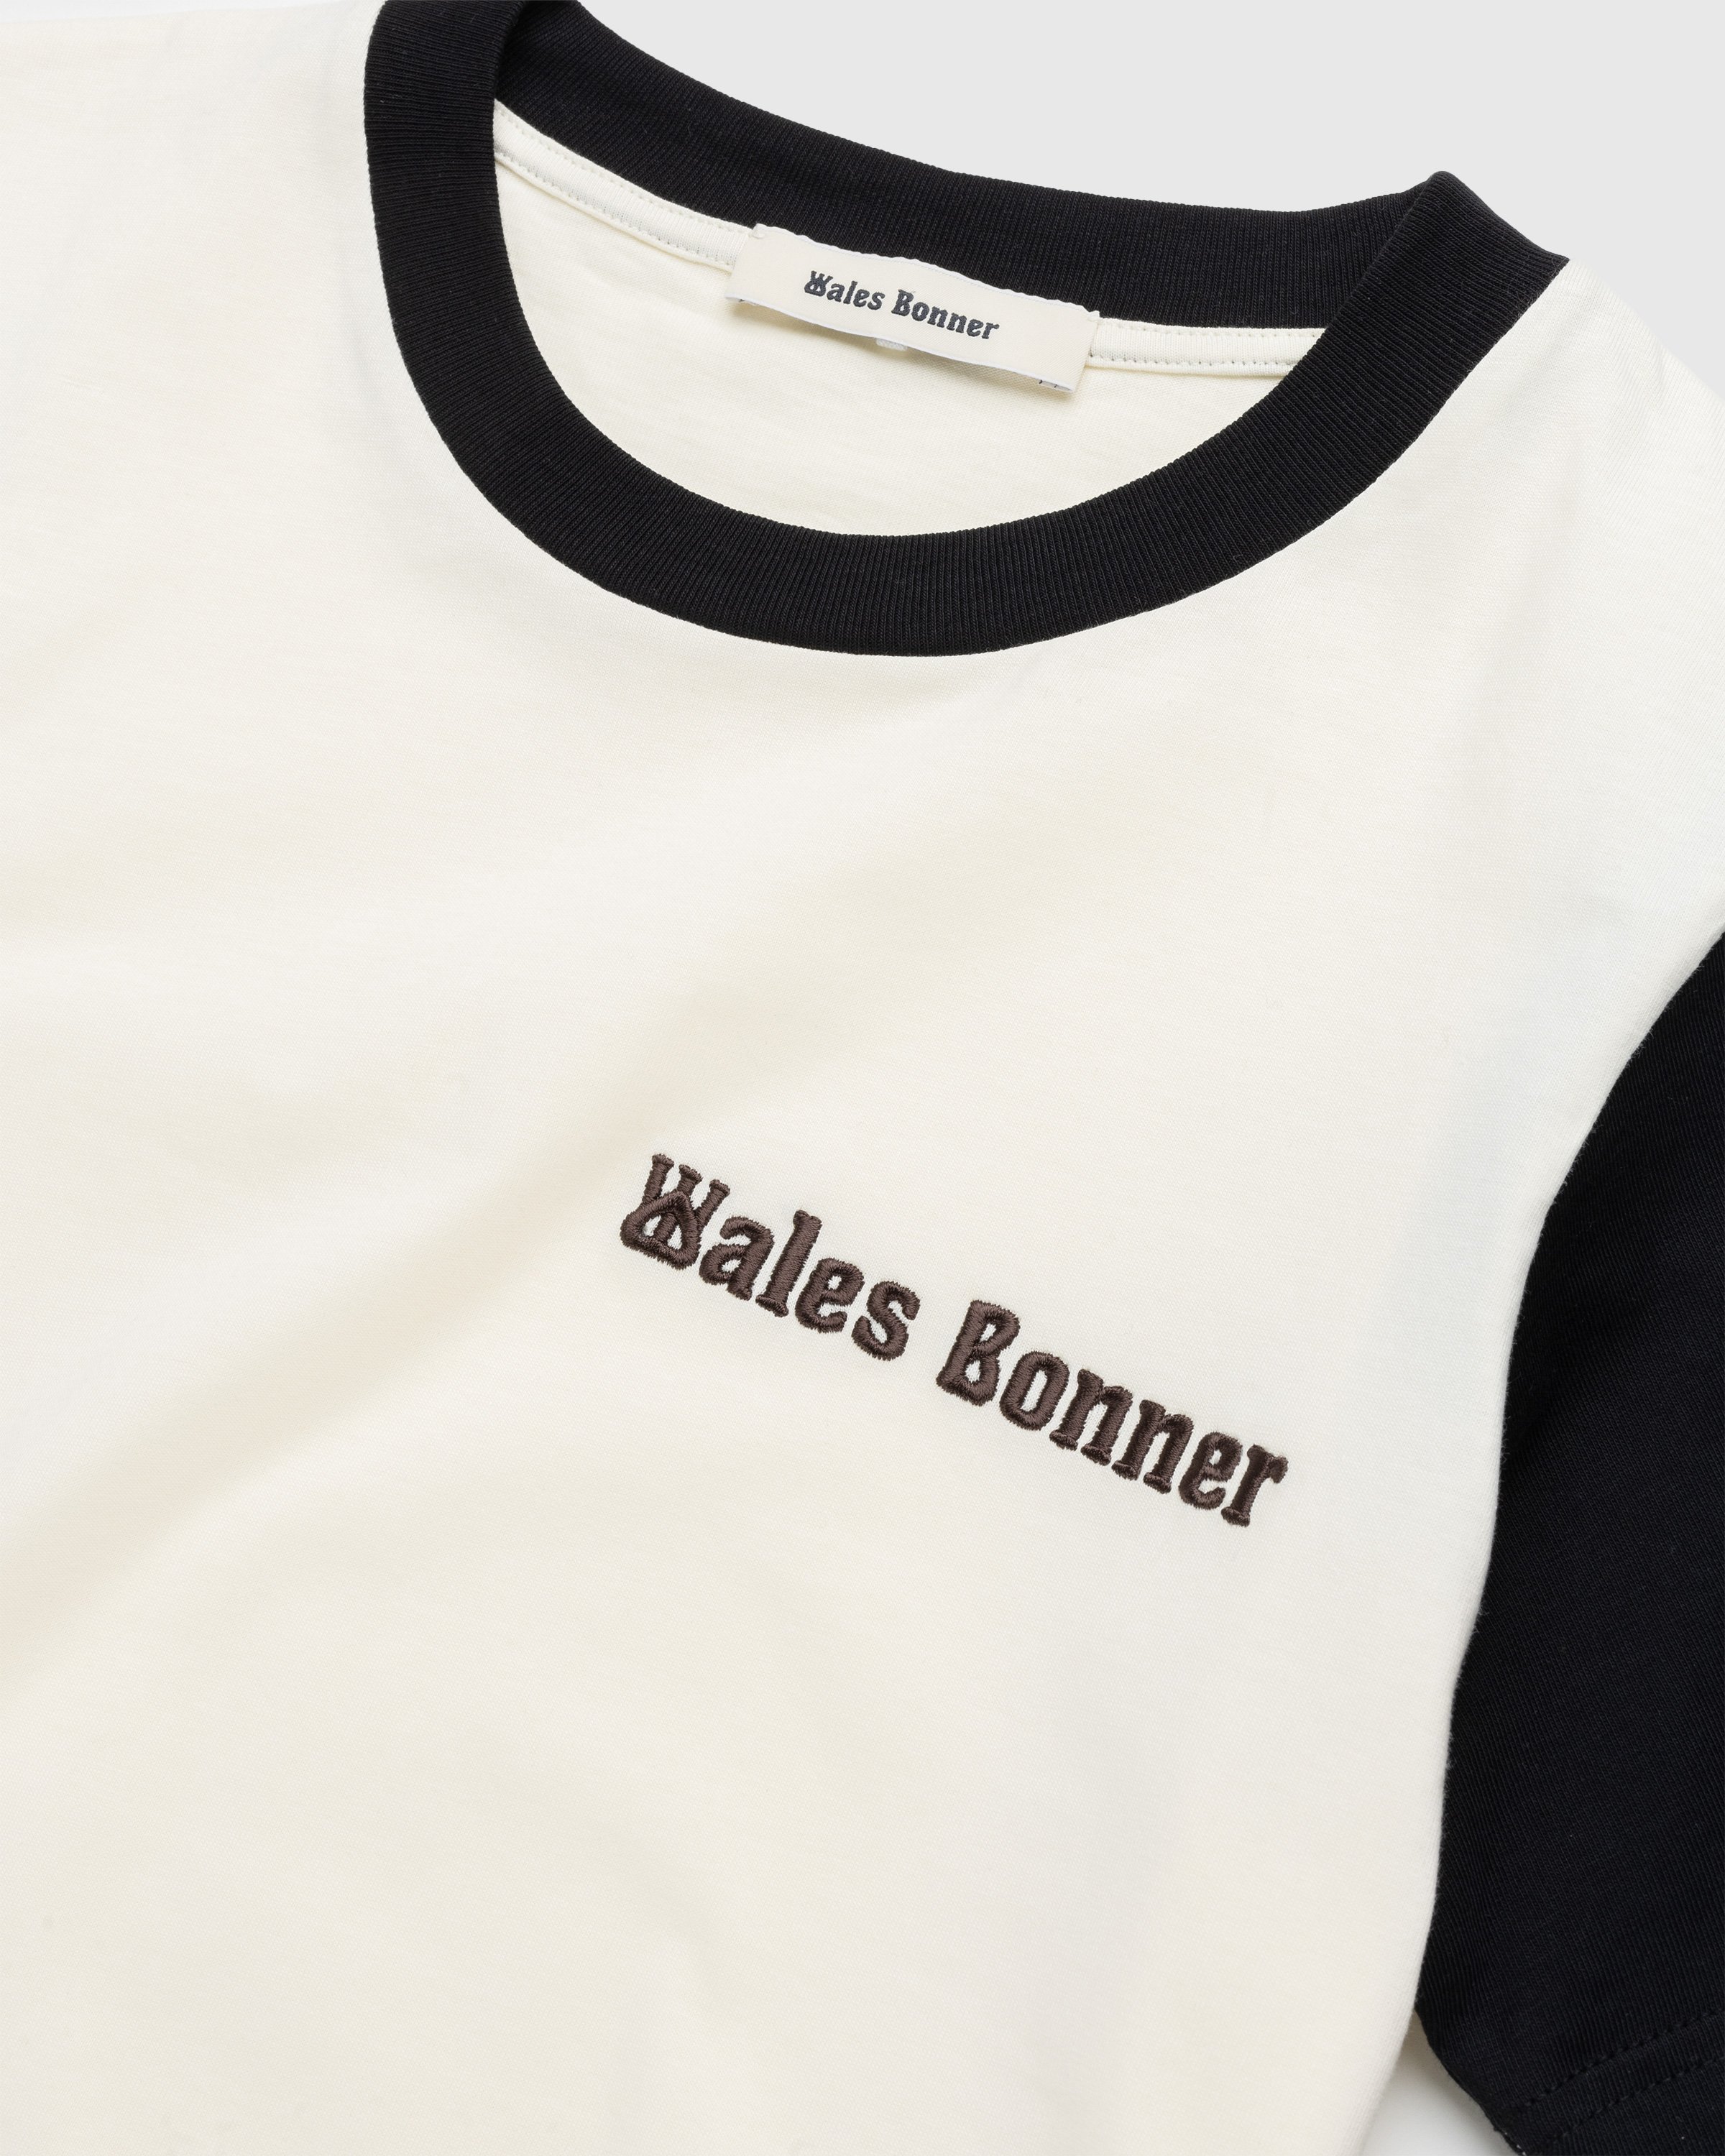 Wales Bonner - Morning Tee Black/Ivory - Clothing - White - Image 6